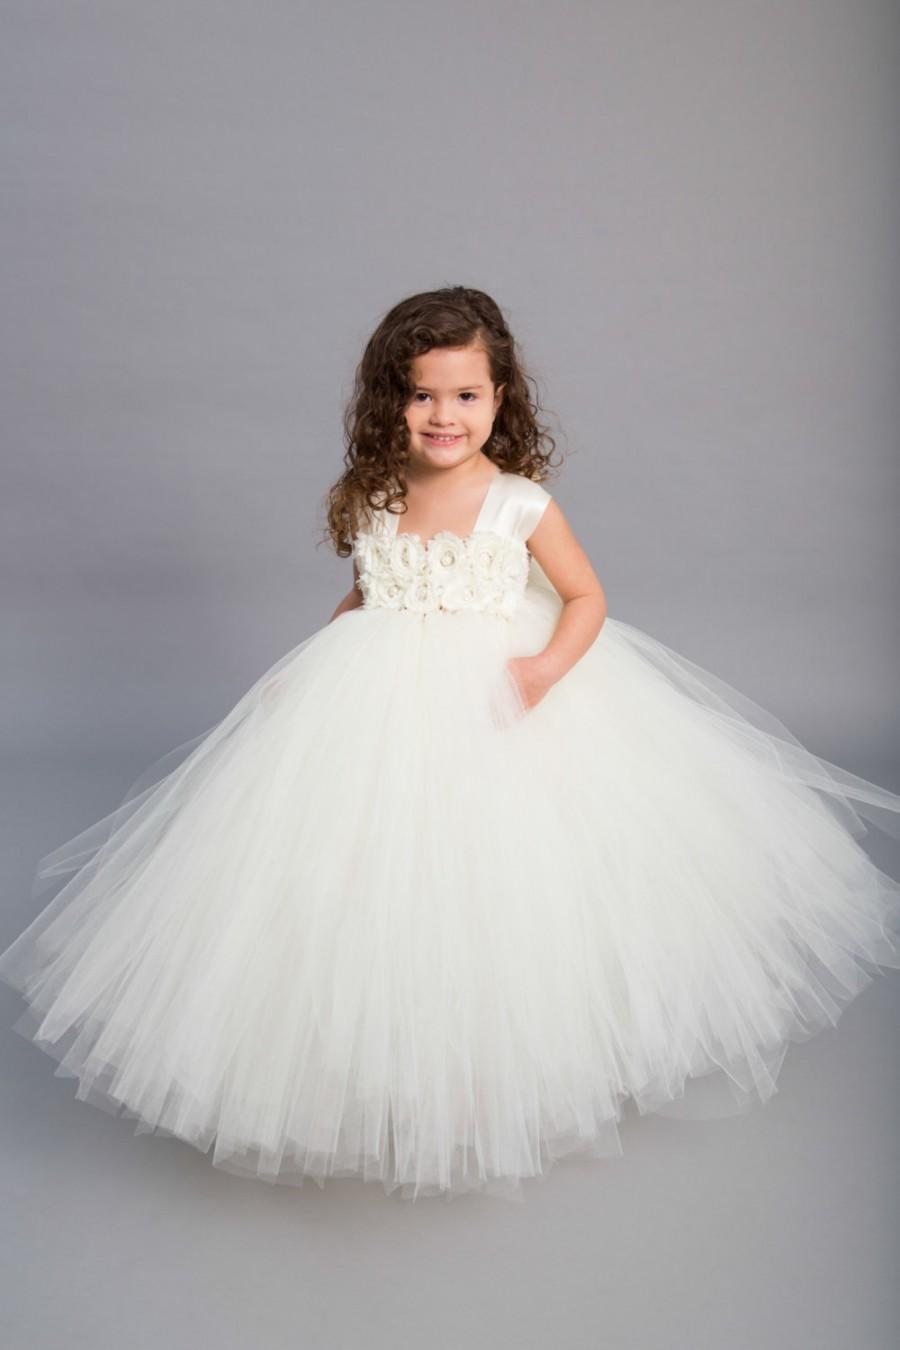 Mariage - Flower girl dress - Tulle flower girl dress - Ivory Dress - Tulle dress-Infant/Toddler - Pageant dress - Princess dress - Ivory flower dress